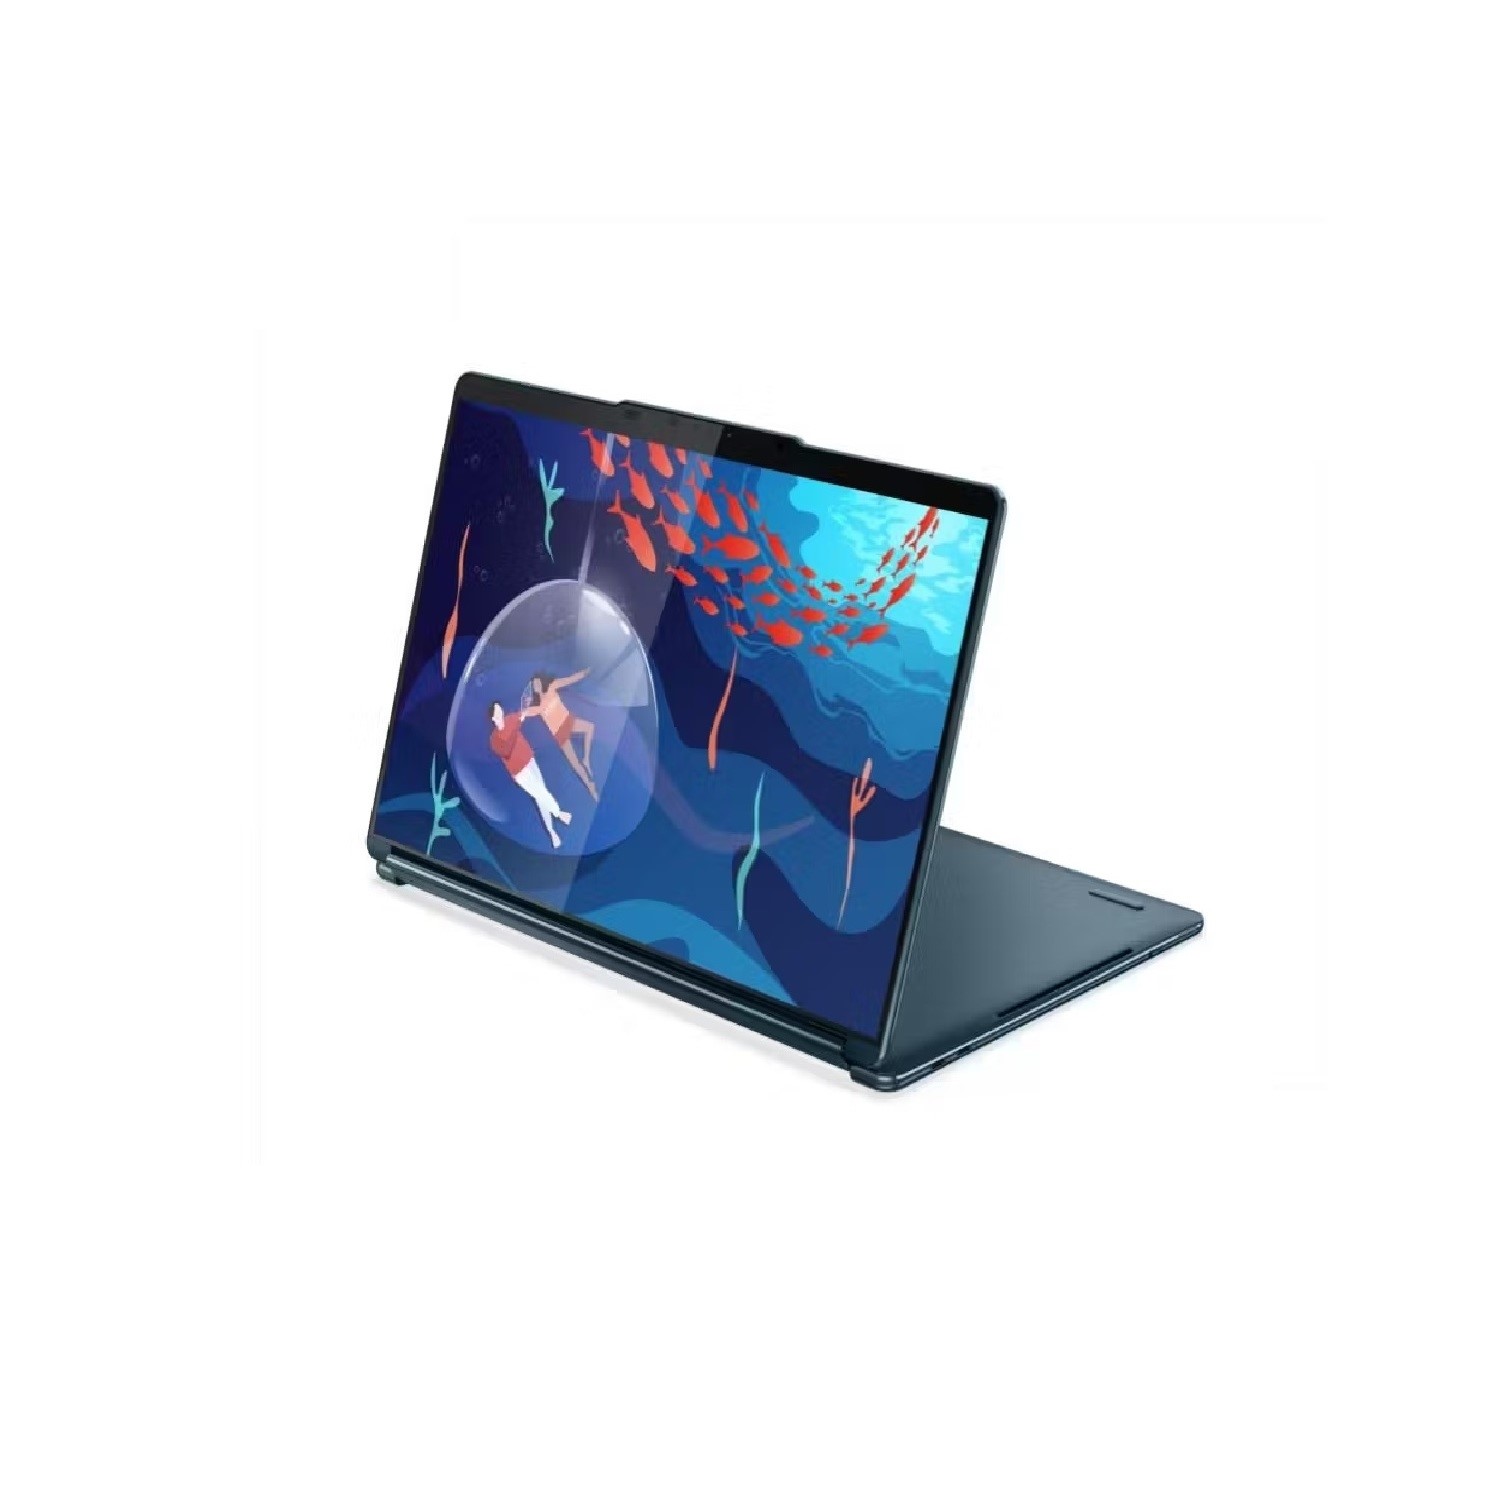 One Netbook A1 Yoga Mini Laptop